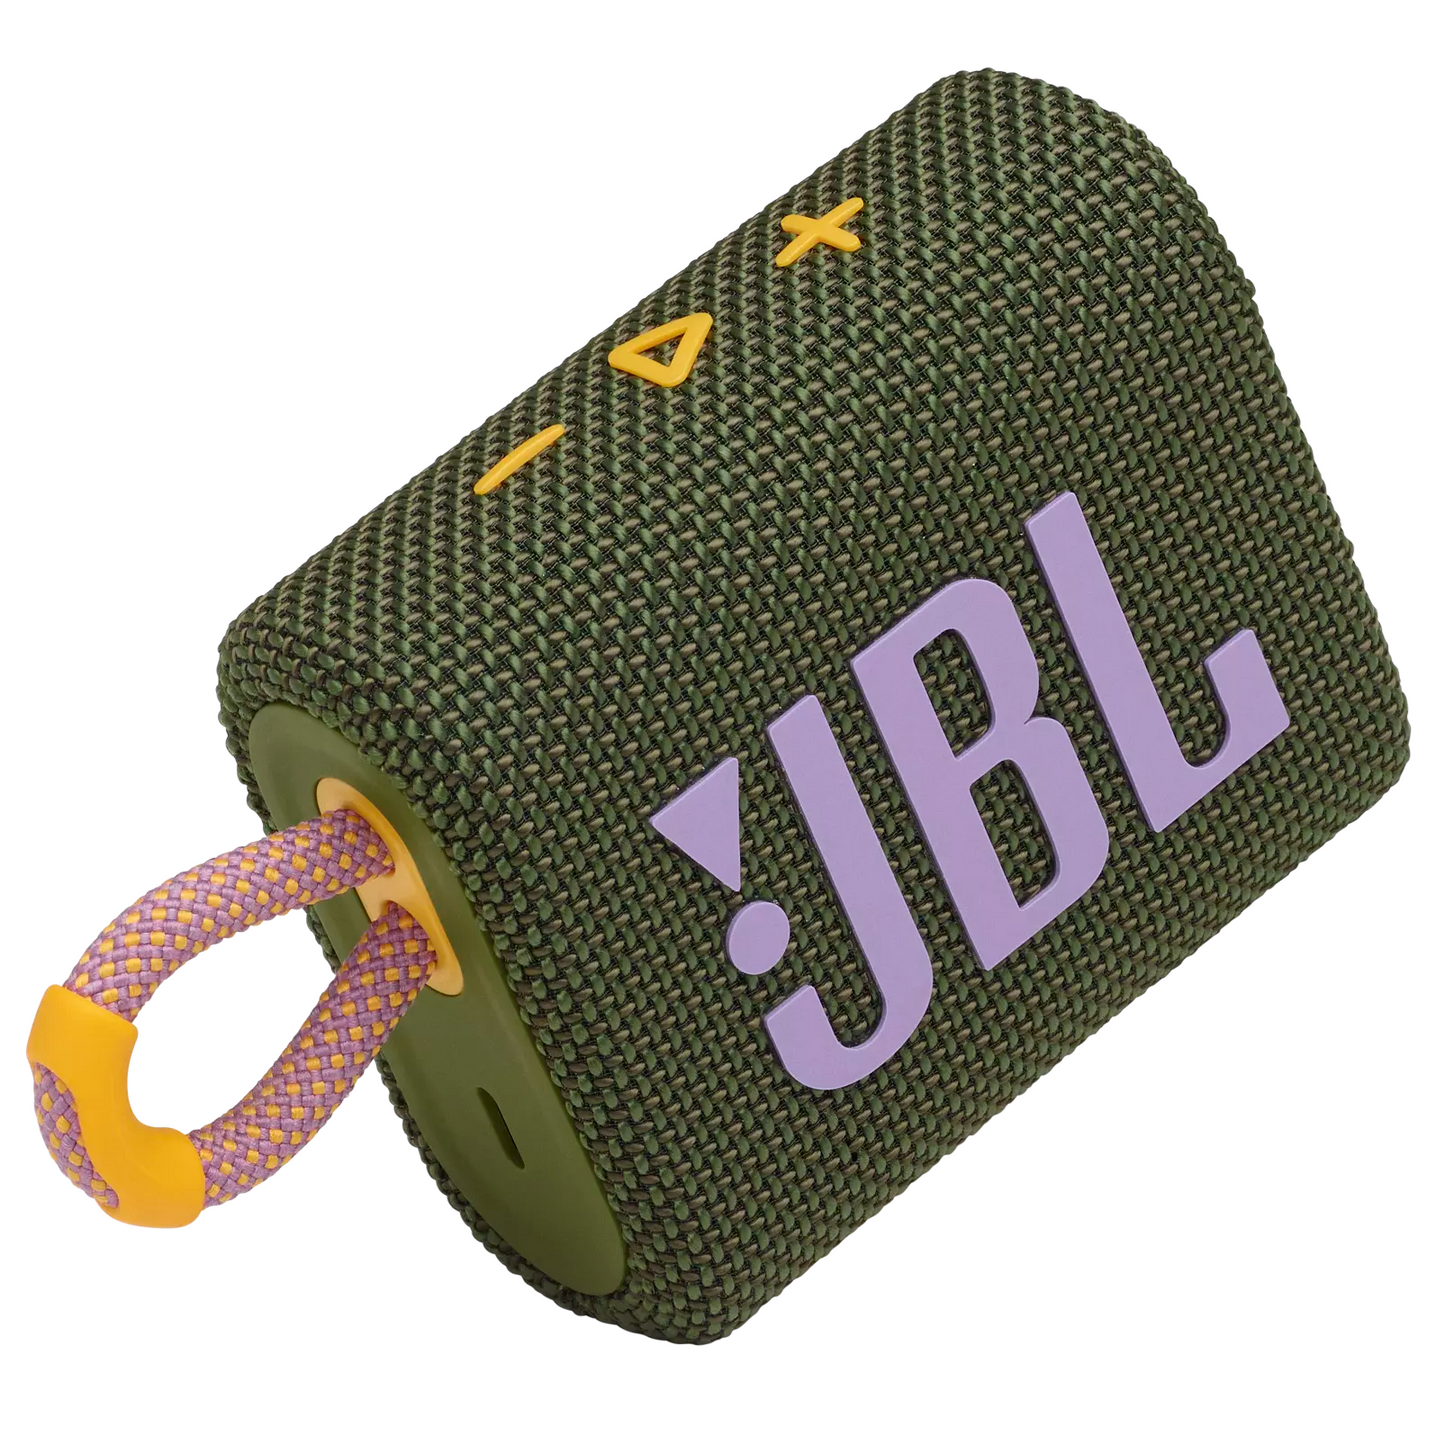 JBL Go 2/3 Repair Service